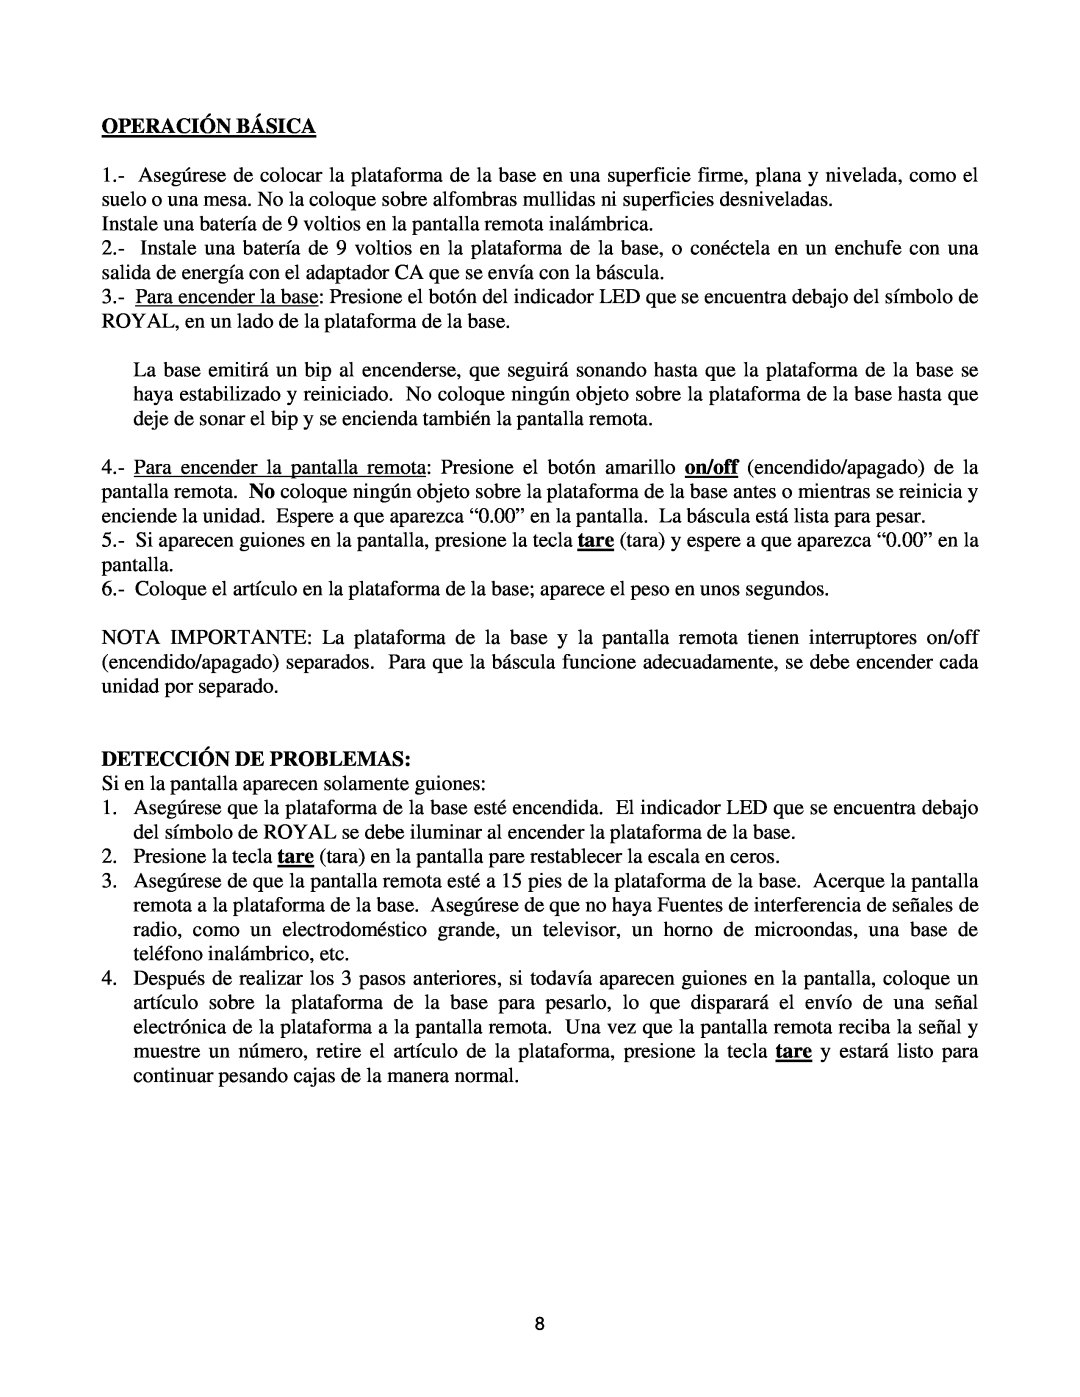 Royal Consumer Information Products eX-315w instruction manual Operación Básica, Detección De Problemas 